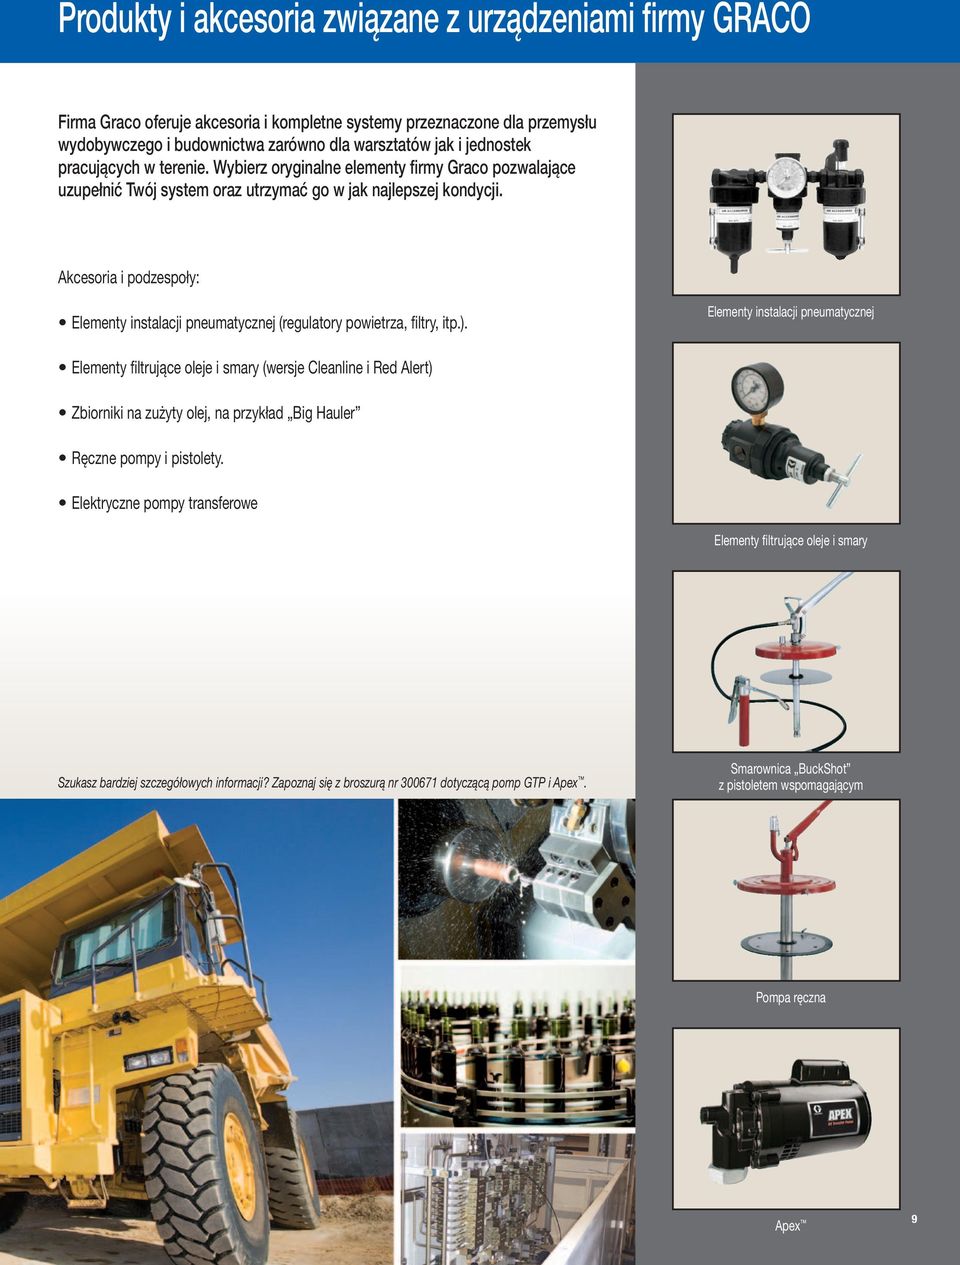 Akcesoria i podzespoły: Elementy instalacji pneumatycznej (regulatory powietrza, filtry, itp.).